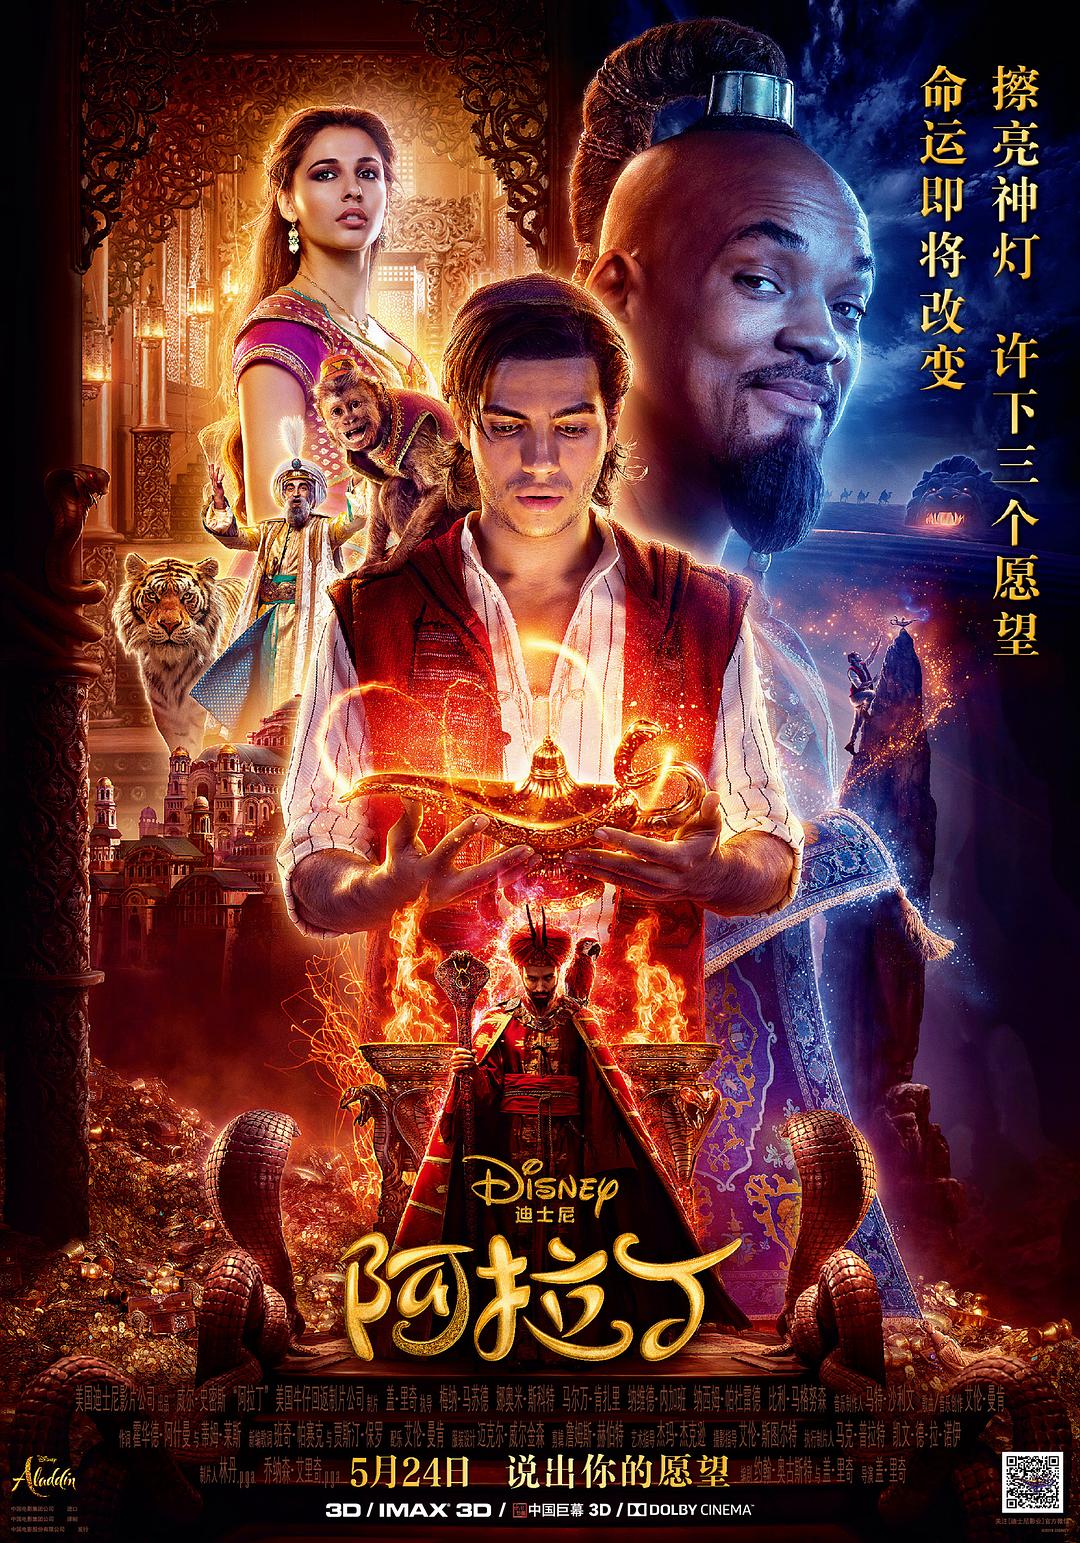 阿拉丁/阿拉丁真人版 Aladdin.2019.1080p.3D.BluRay.Half-OU.x264.DTS-HD.MA.7.1-FGT 20.94GB-1.png